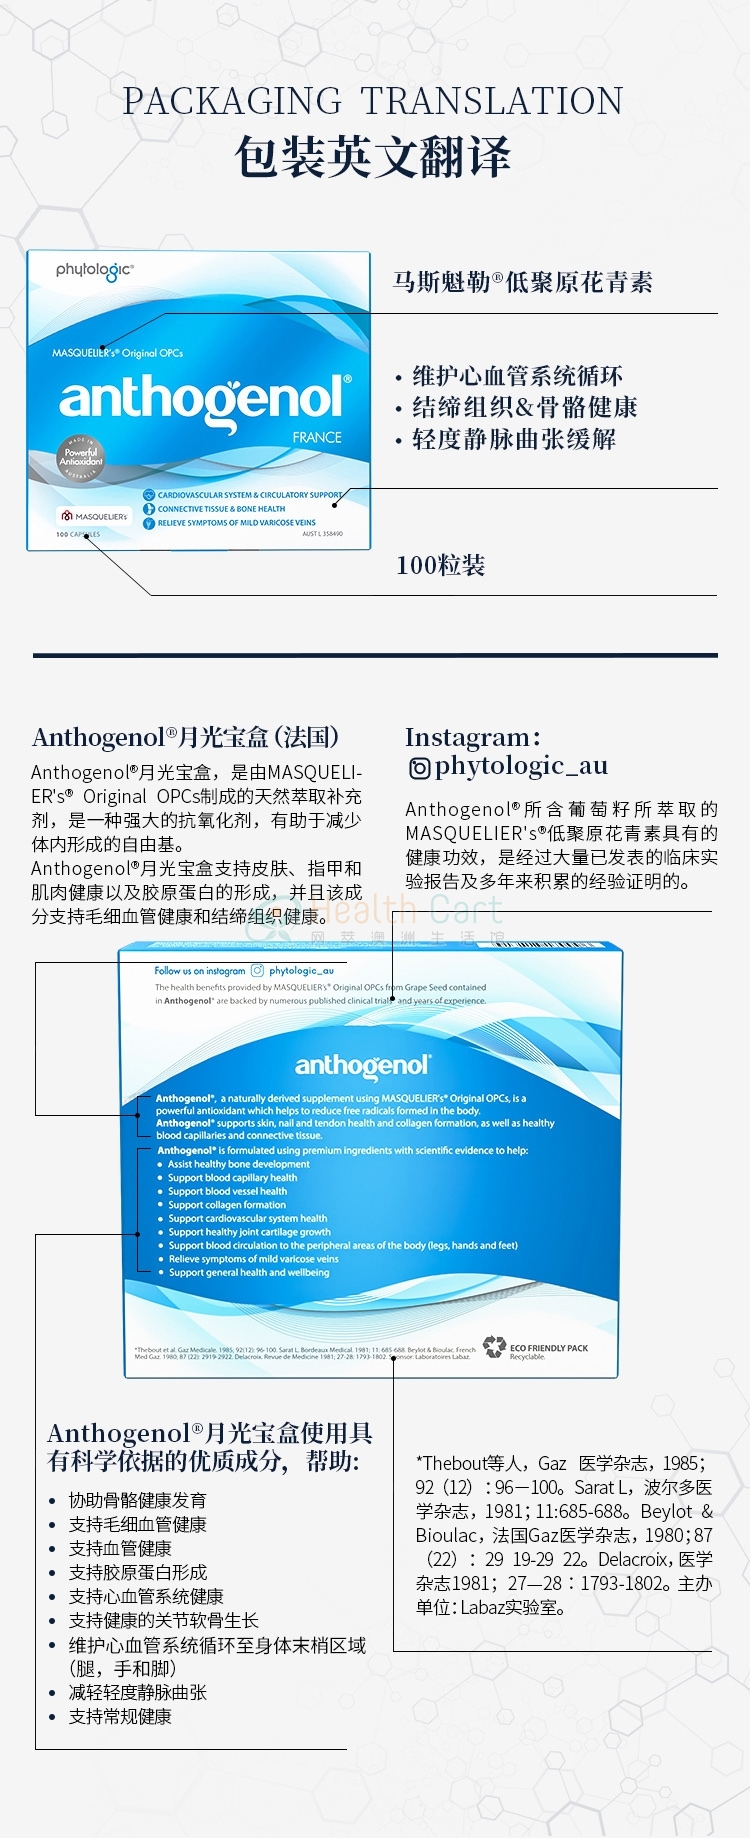 Anthogenol Capsules X 100 - @anthogenol capsules x 100 - 23 - Health Cart